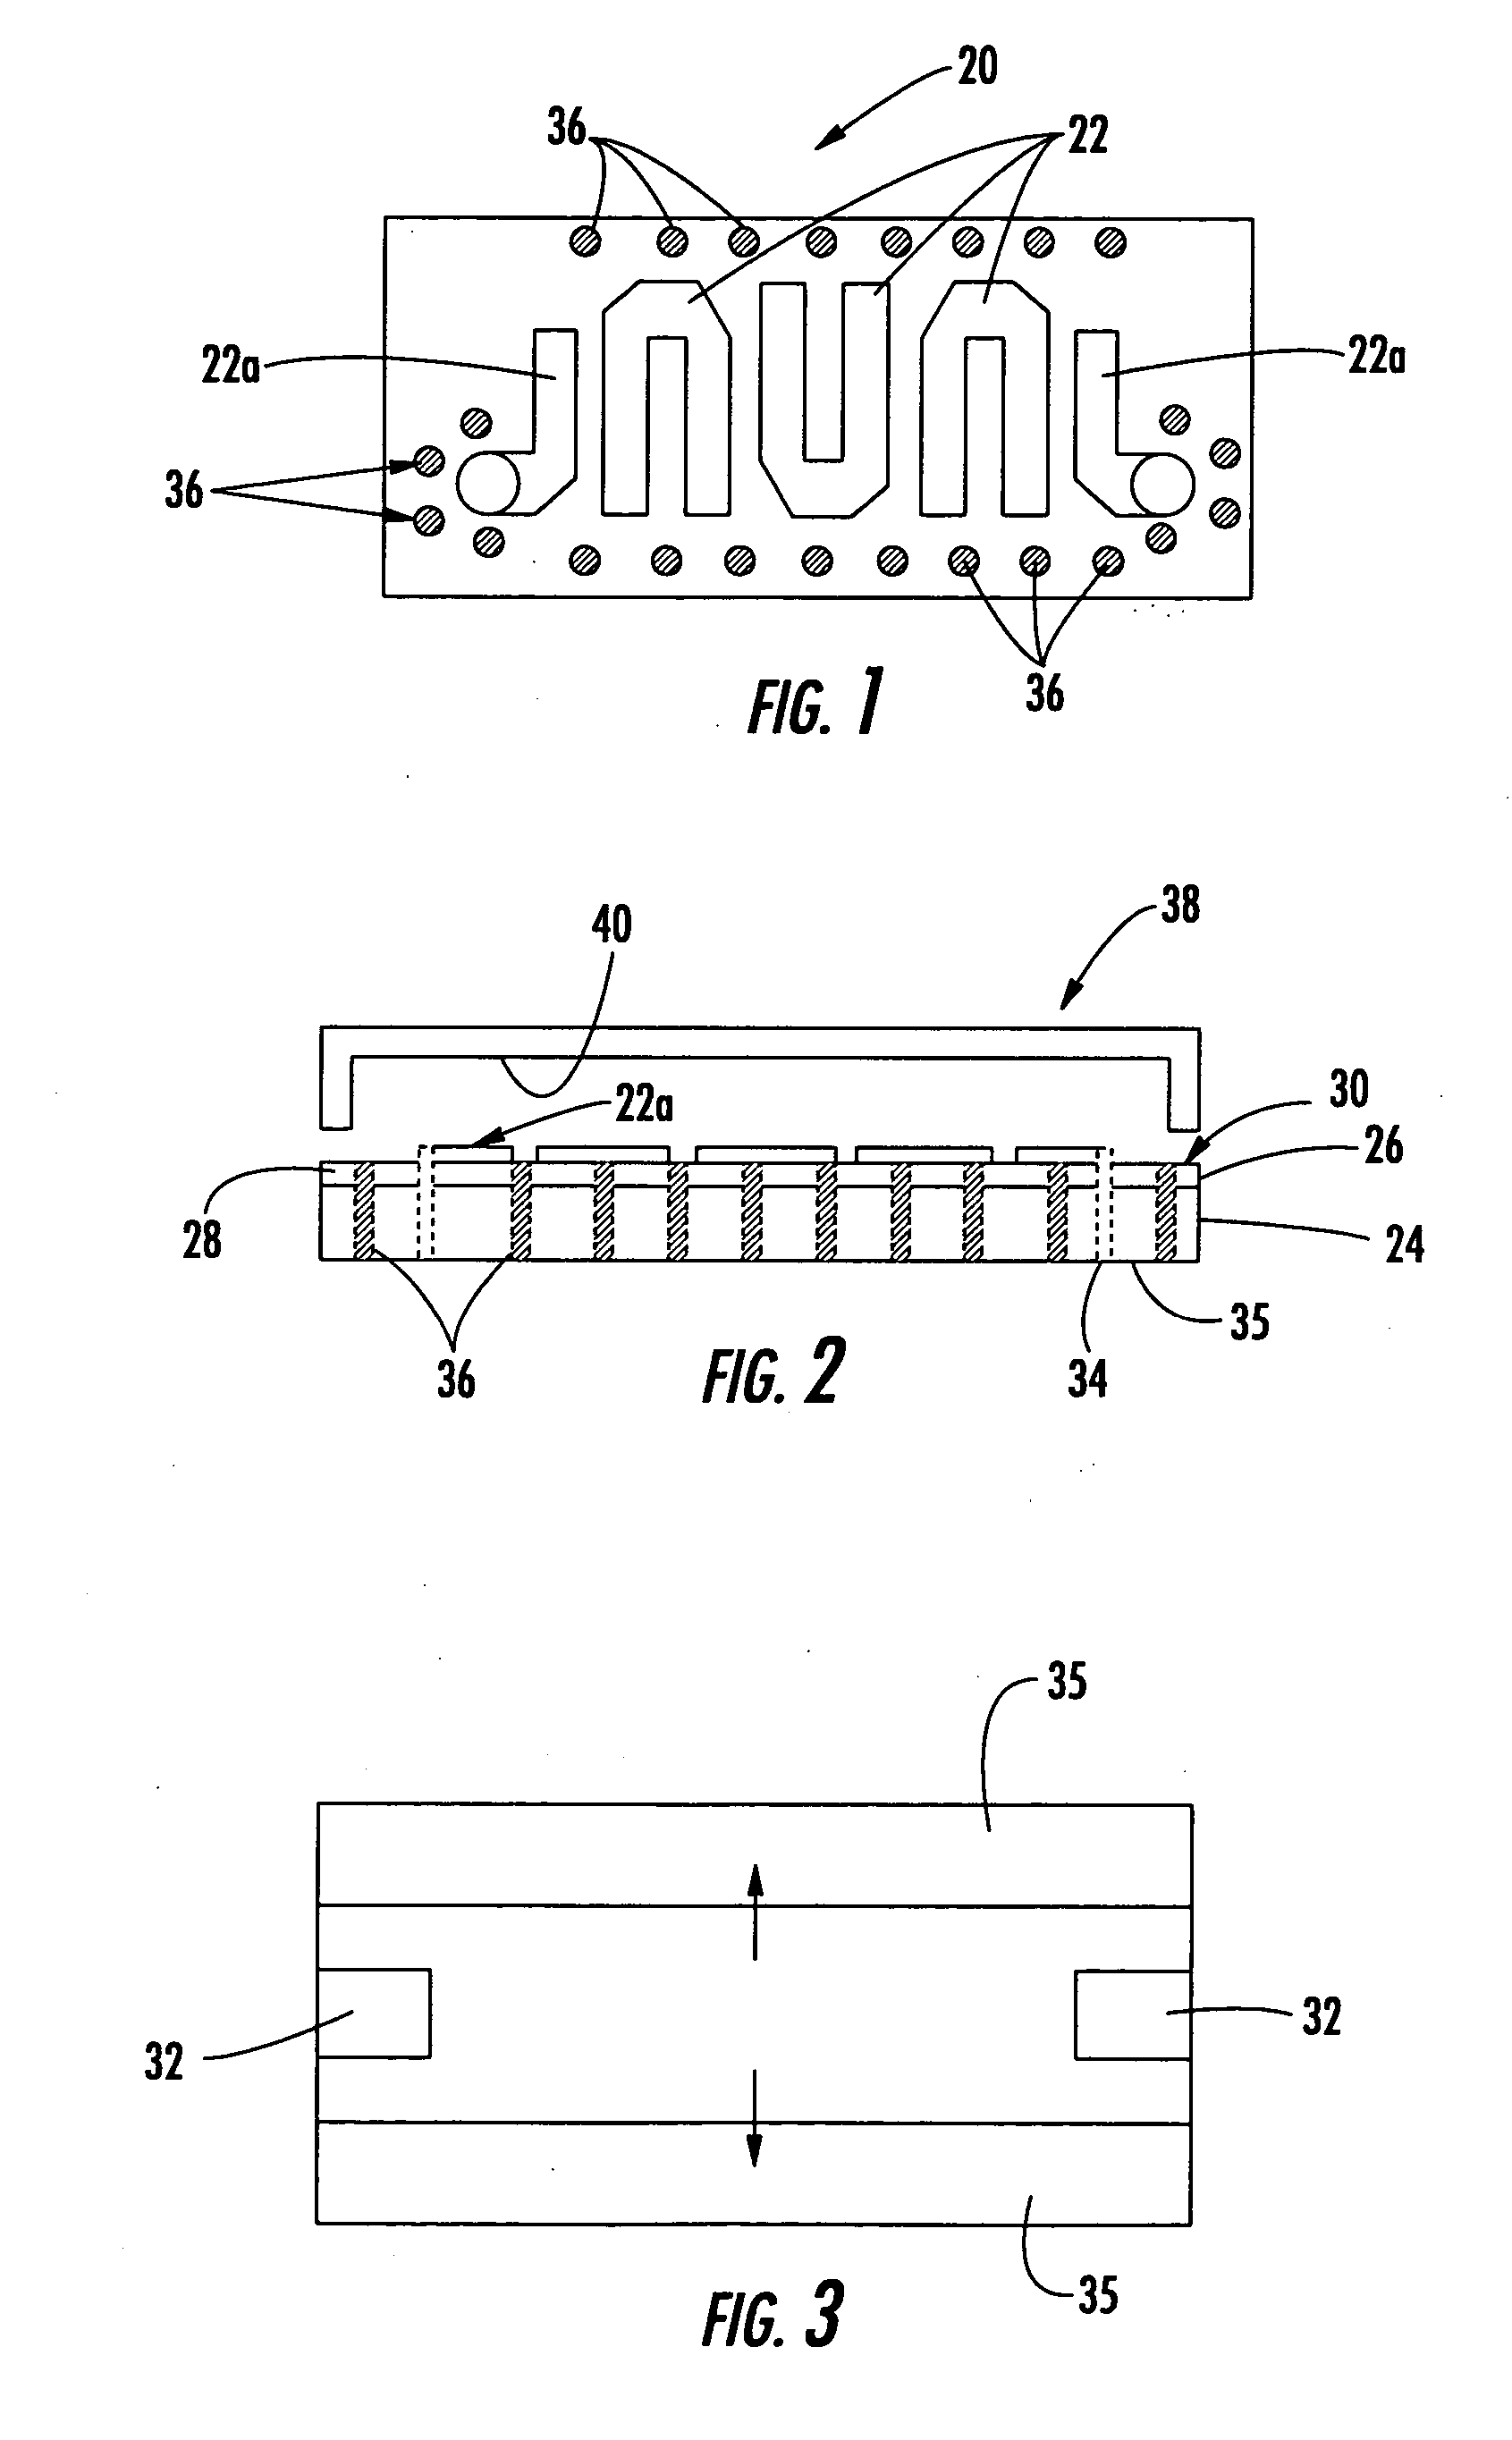 Millimeter wave surface mount filter